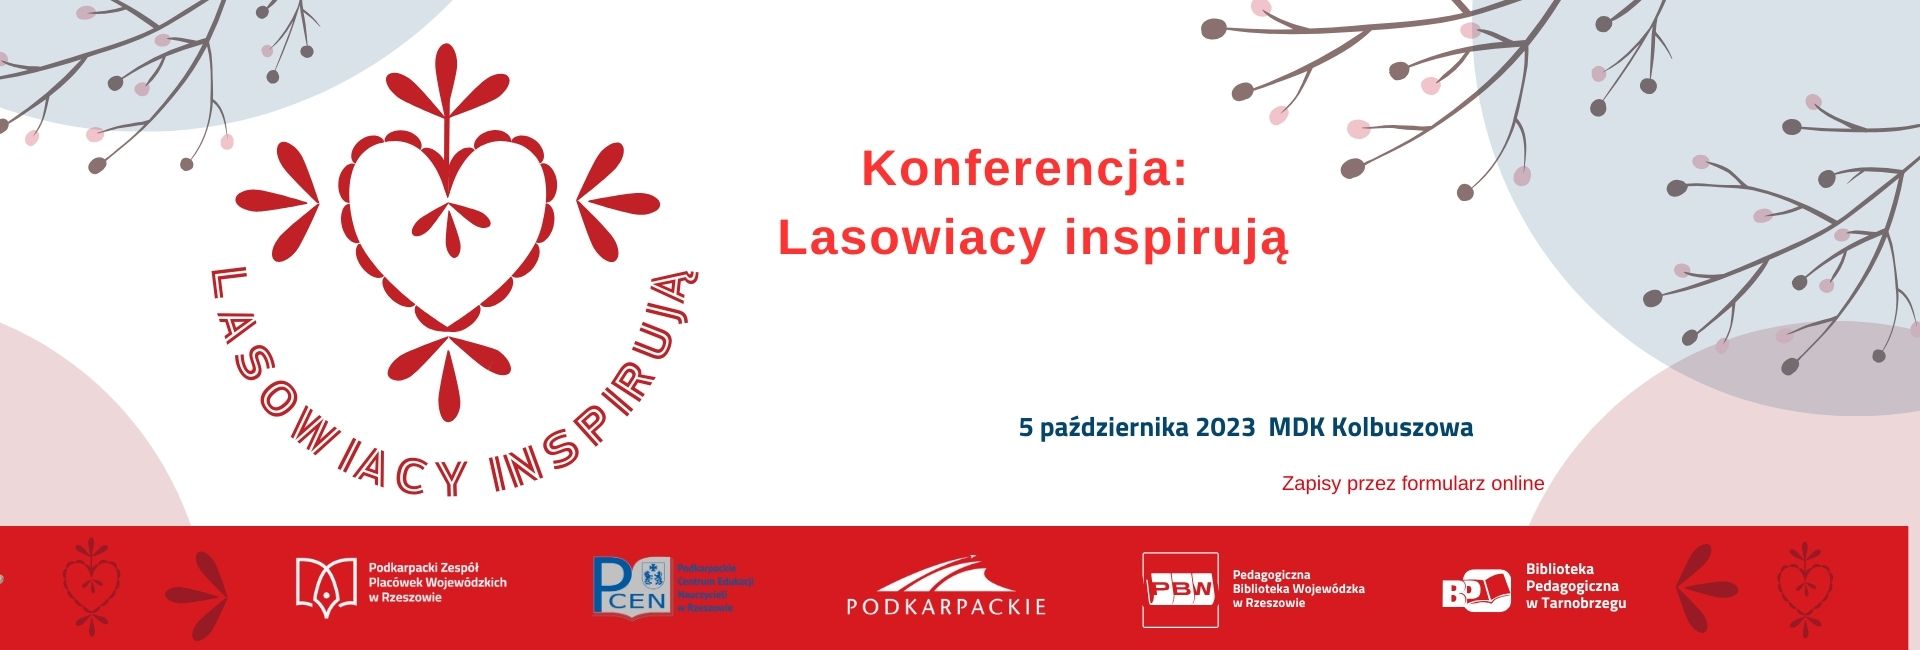 Konferencja Lasowiacy inspirują